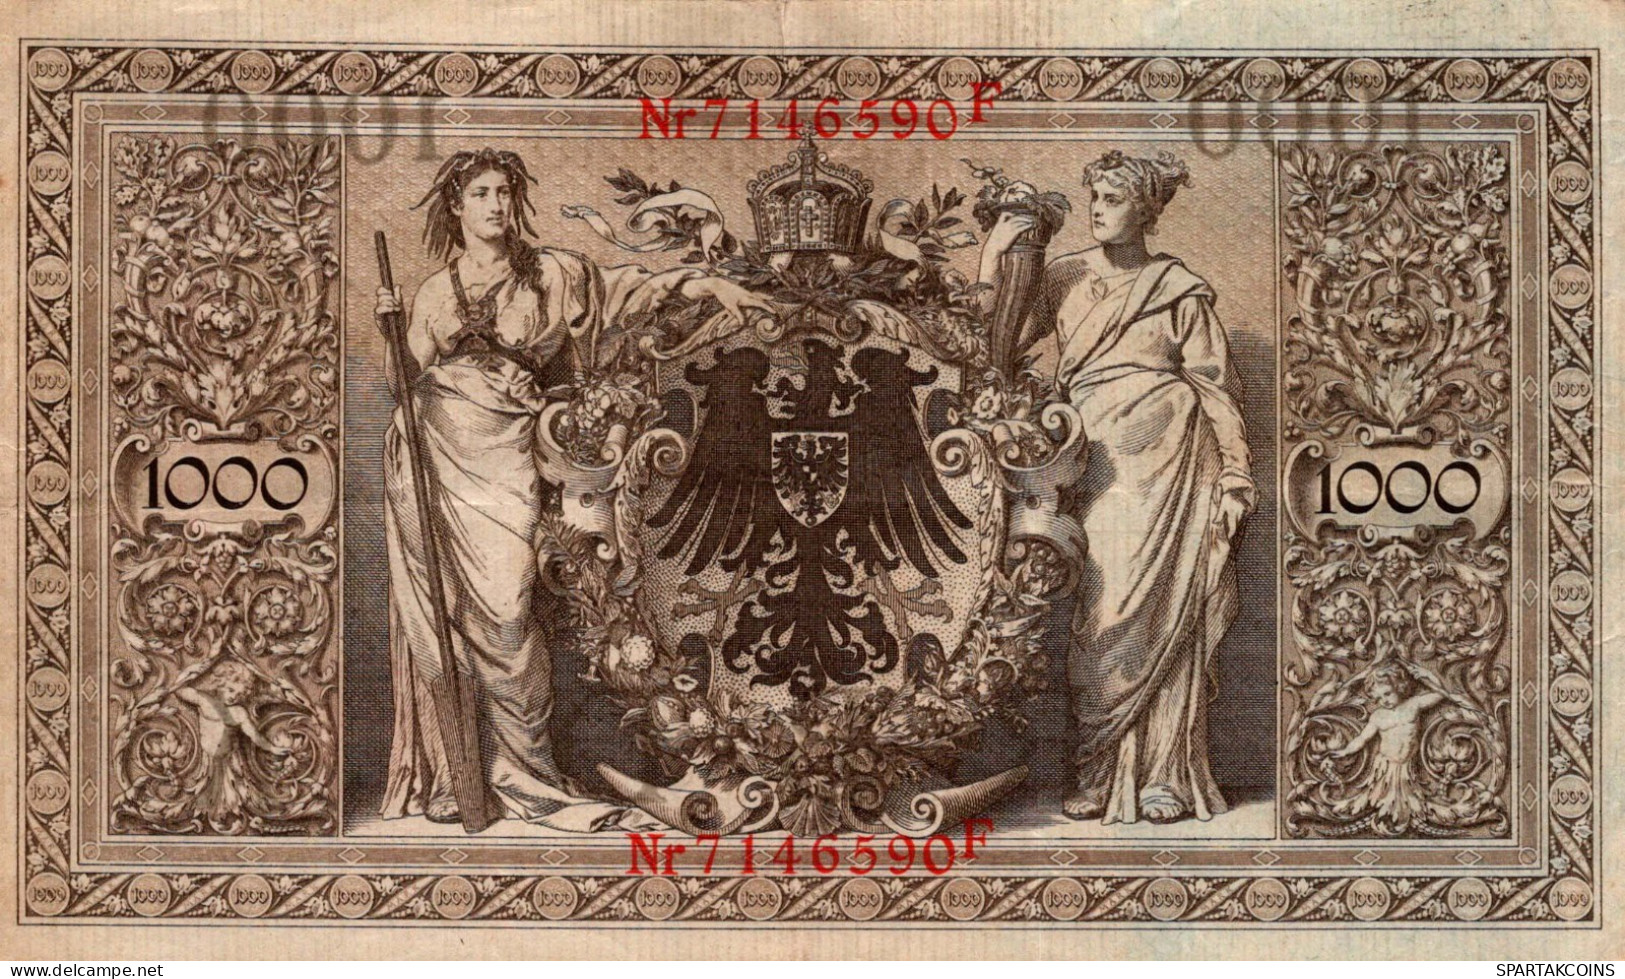 1000 MARK 1910 DEUTSCHLAND Papiergeld Banknote #PL301 - [11] Local Banknote Issues